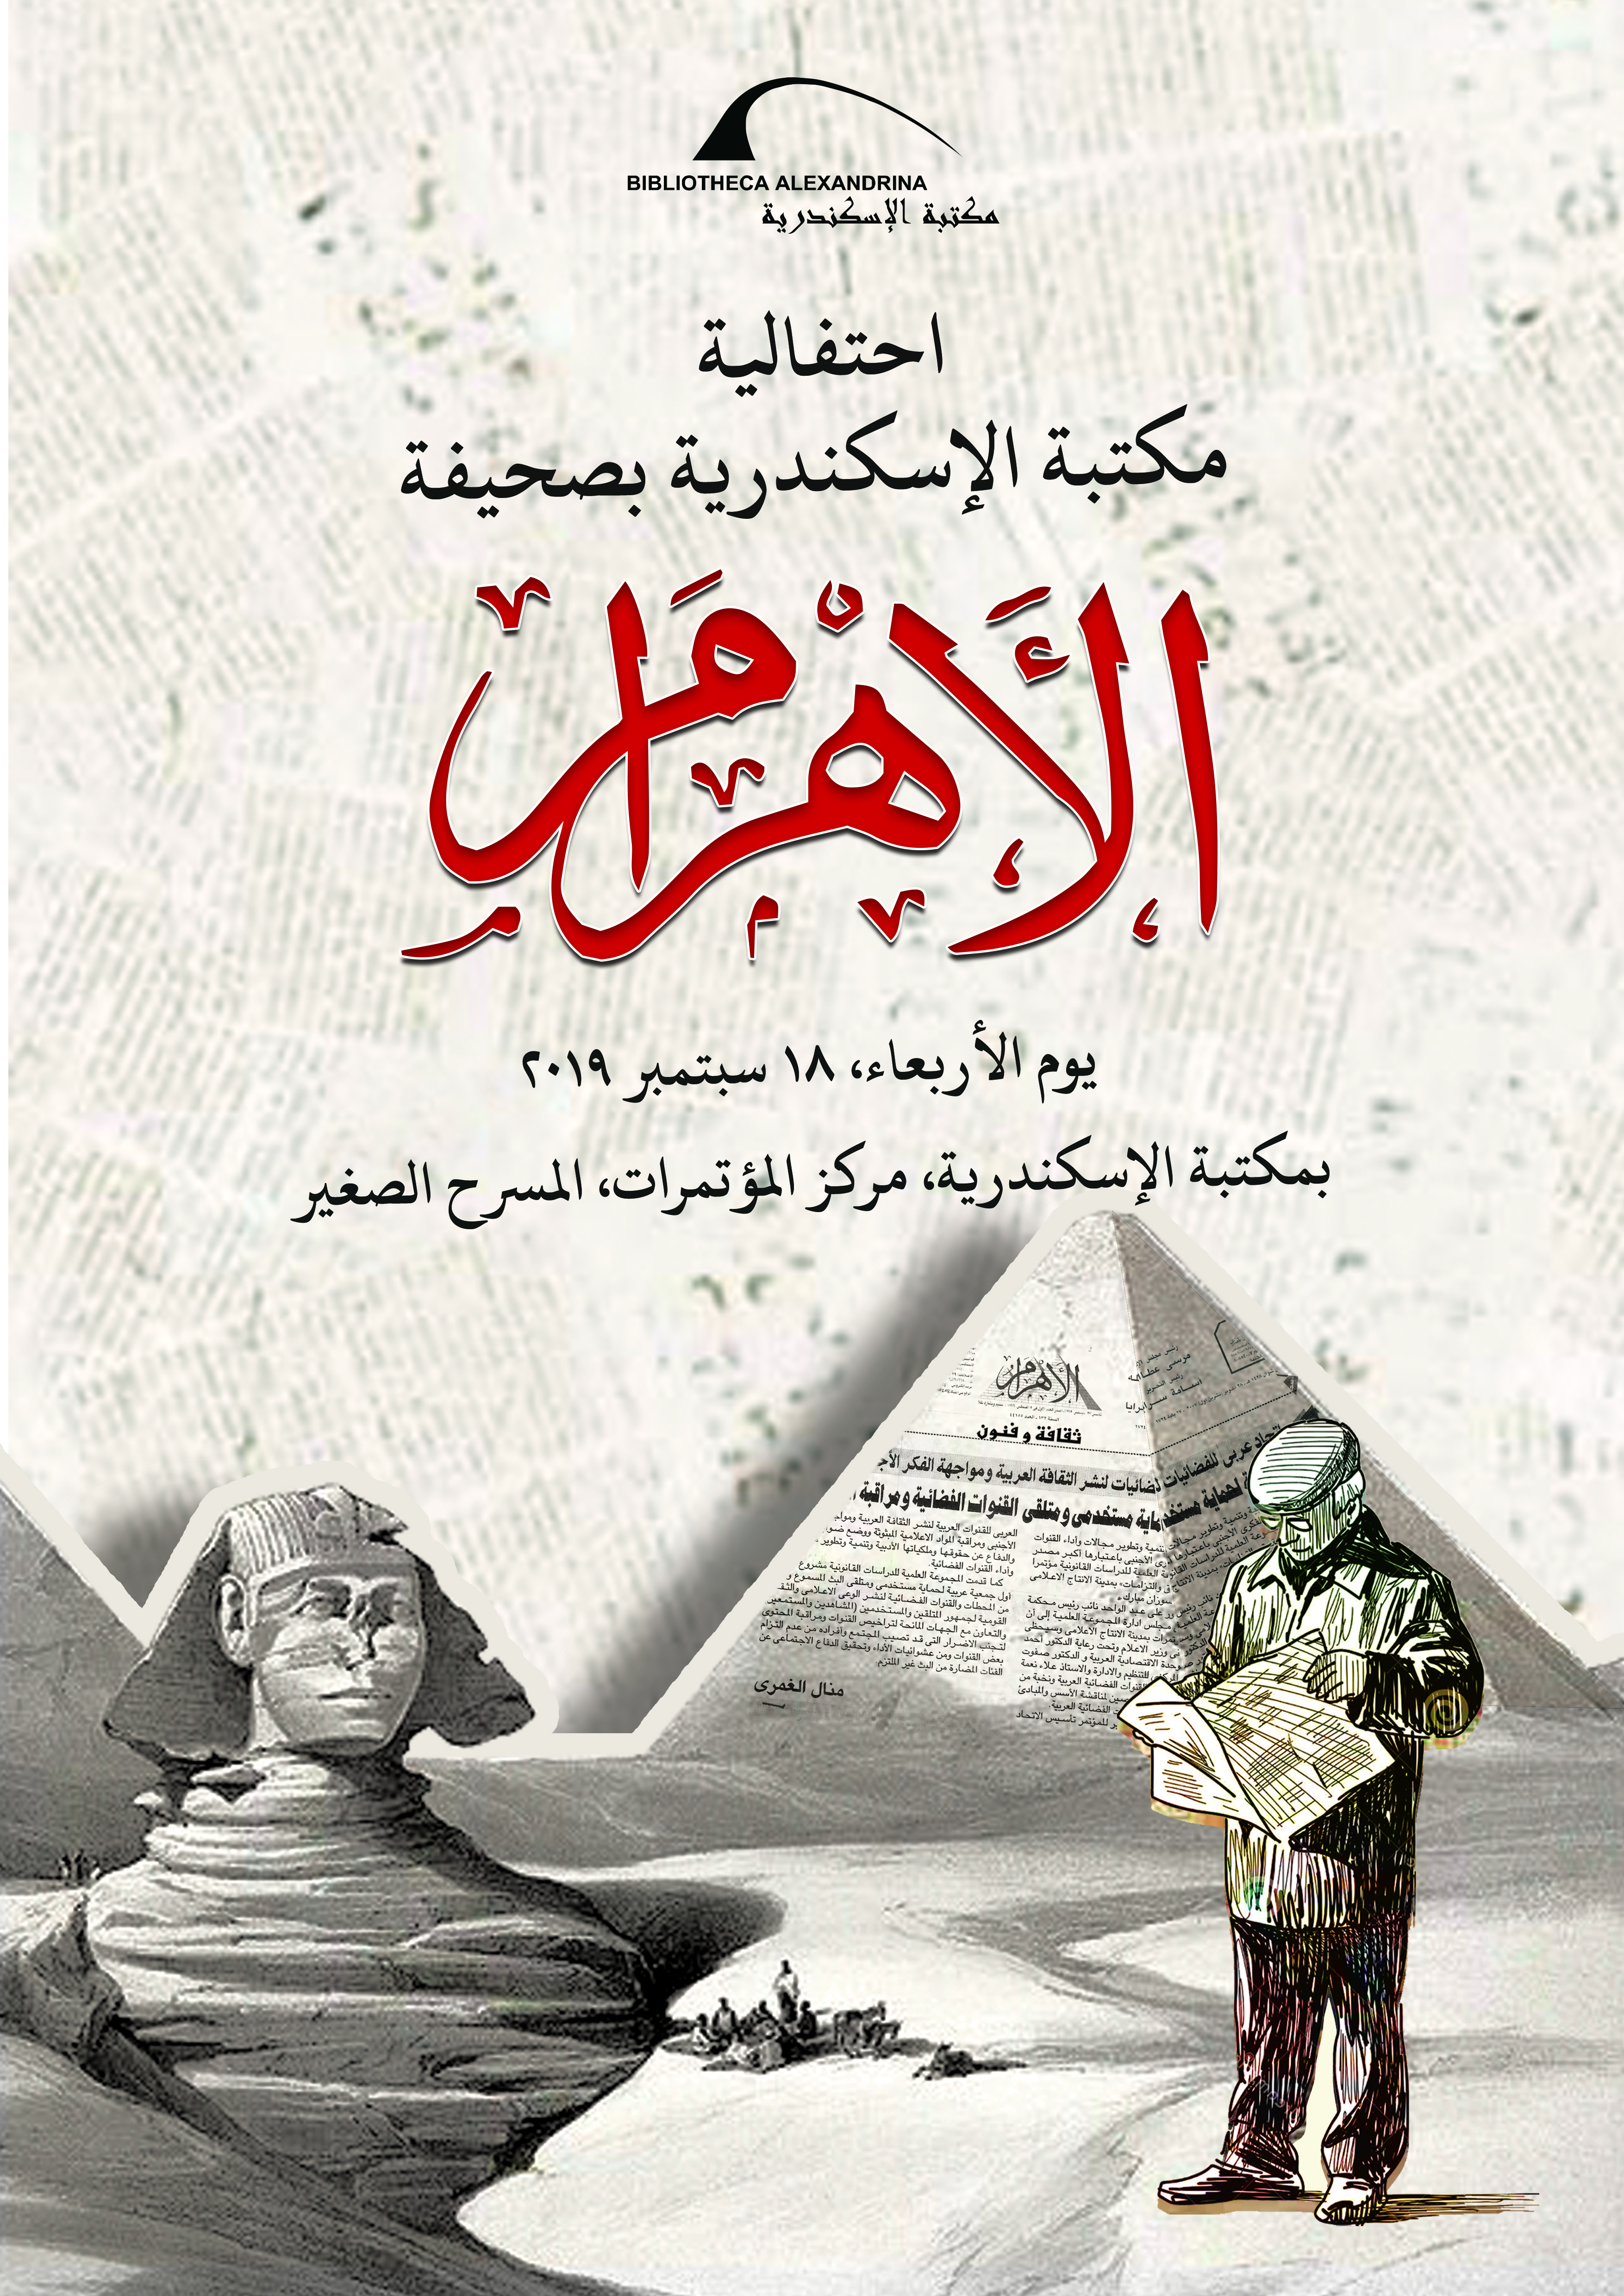 مكتبة الإسكندرية تحتفي بذكري تأسيس صحيفة الأهرام مكتبة الإسكندرية